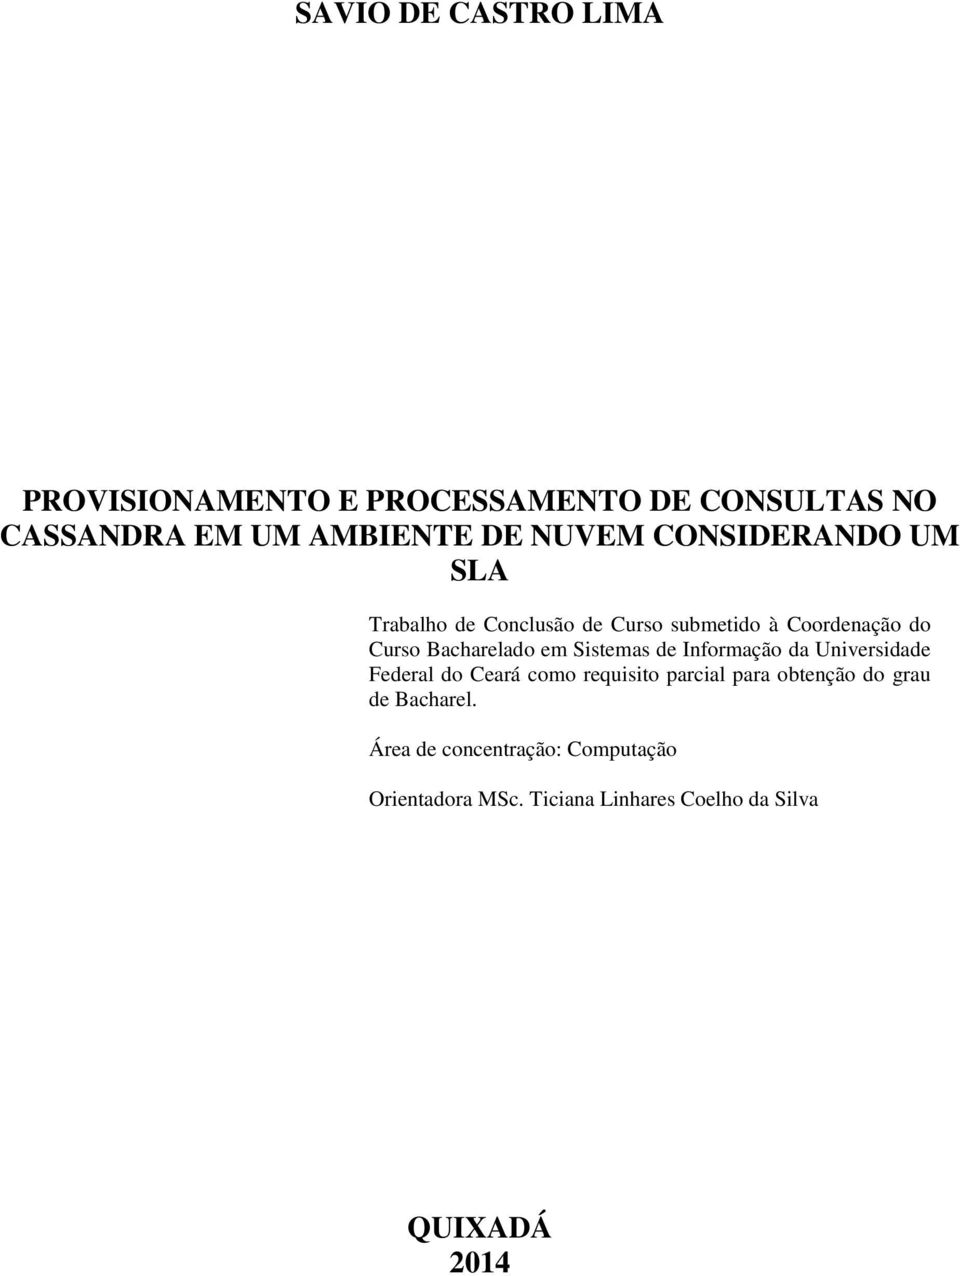 Sistemas de Informação da Universidade Federal do Ceará como requisito parcial para obtenção do grau